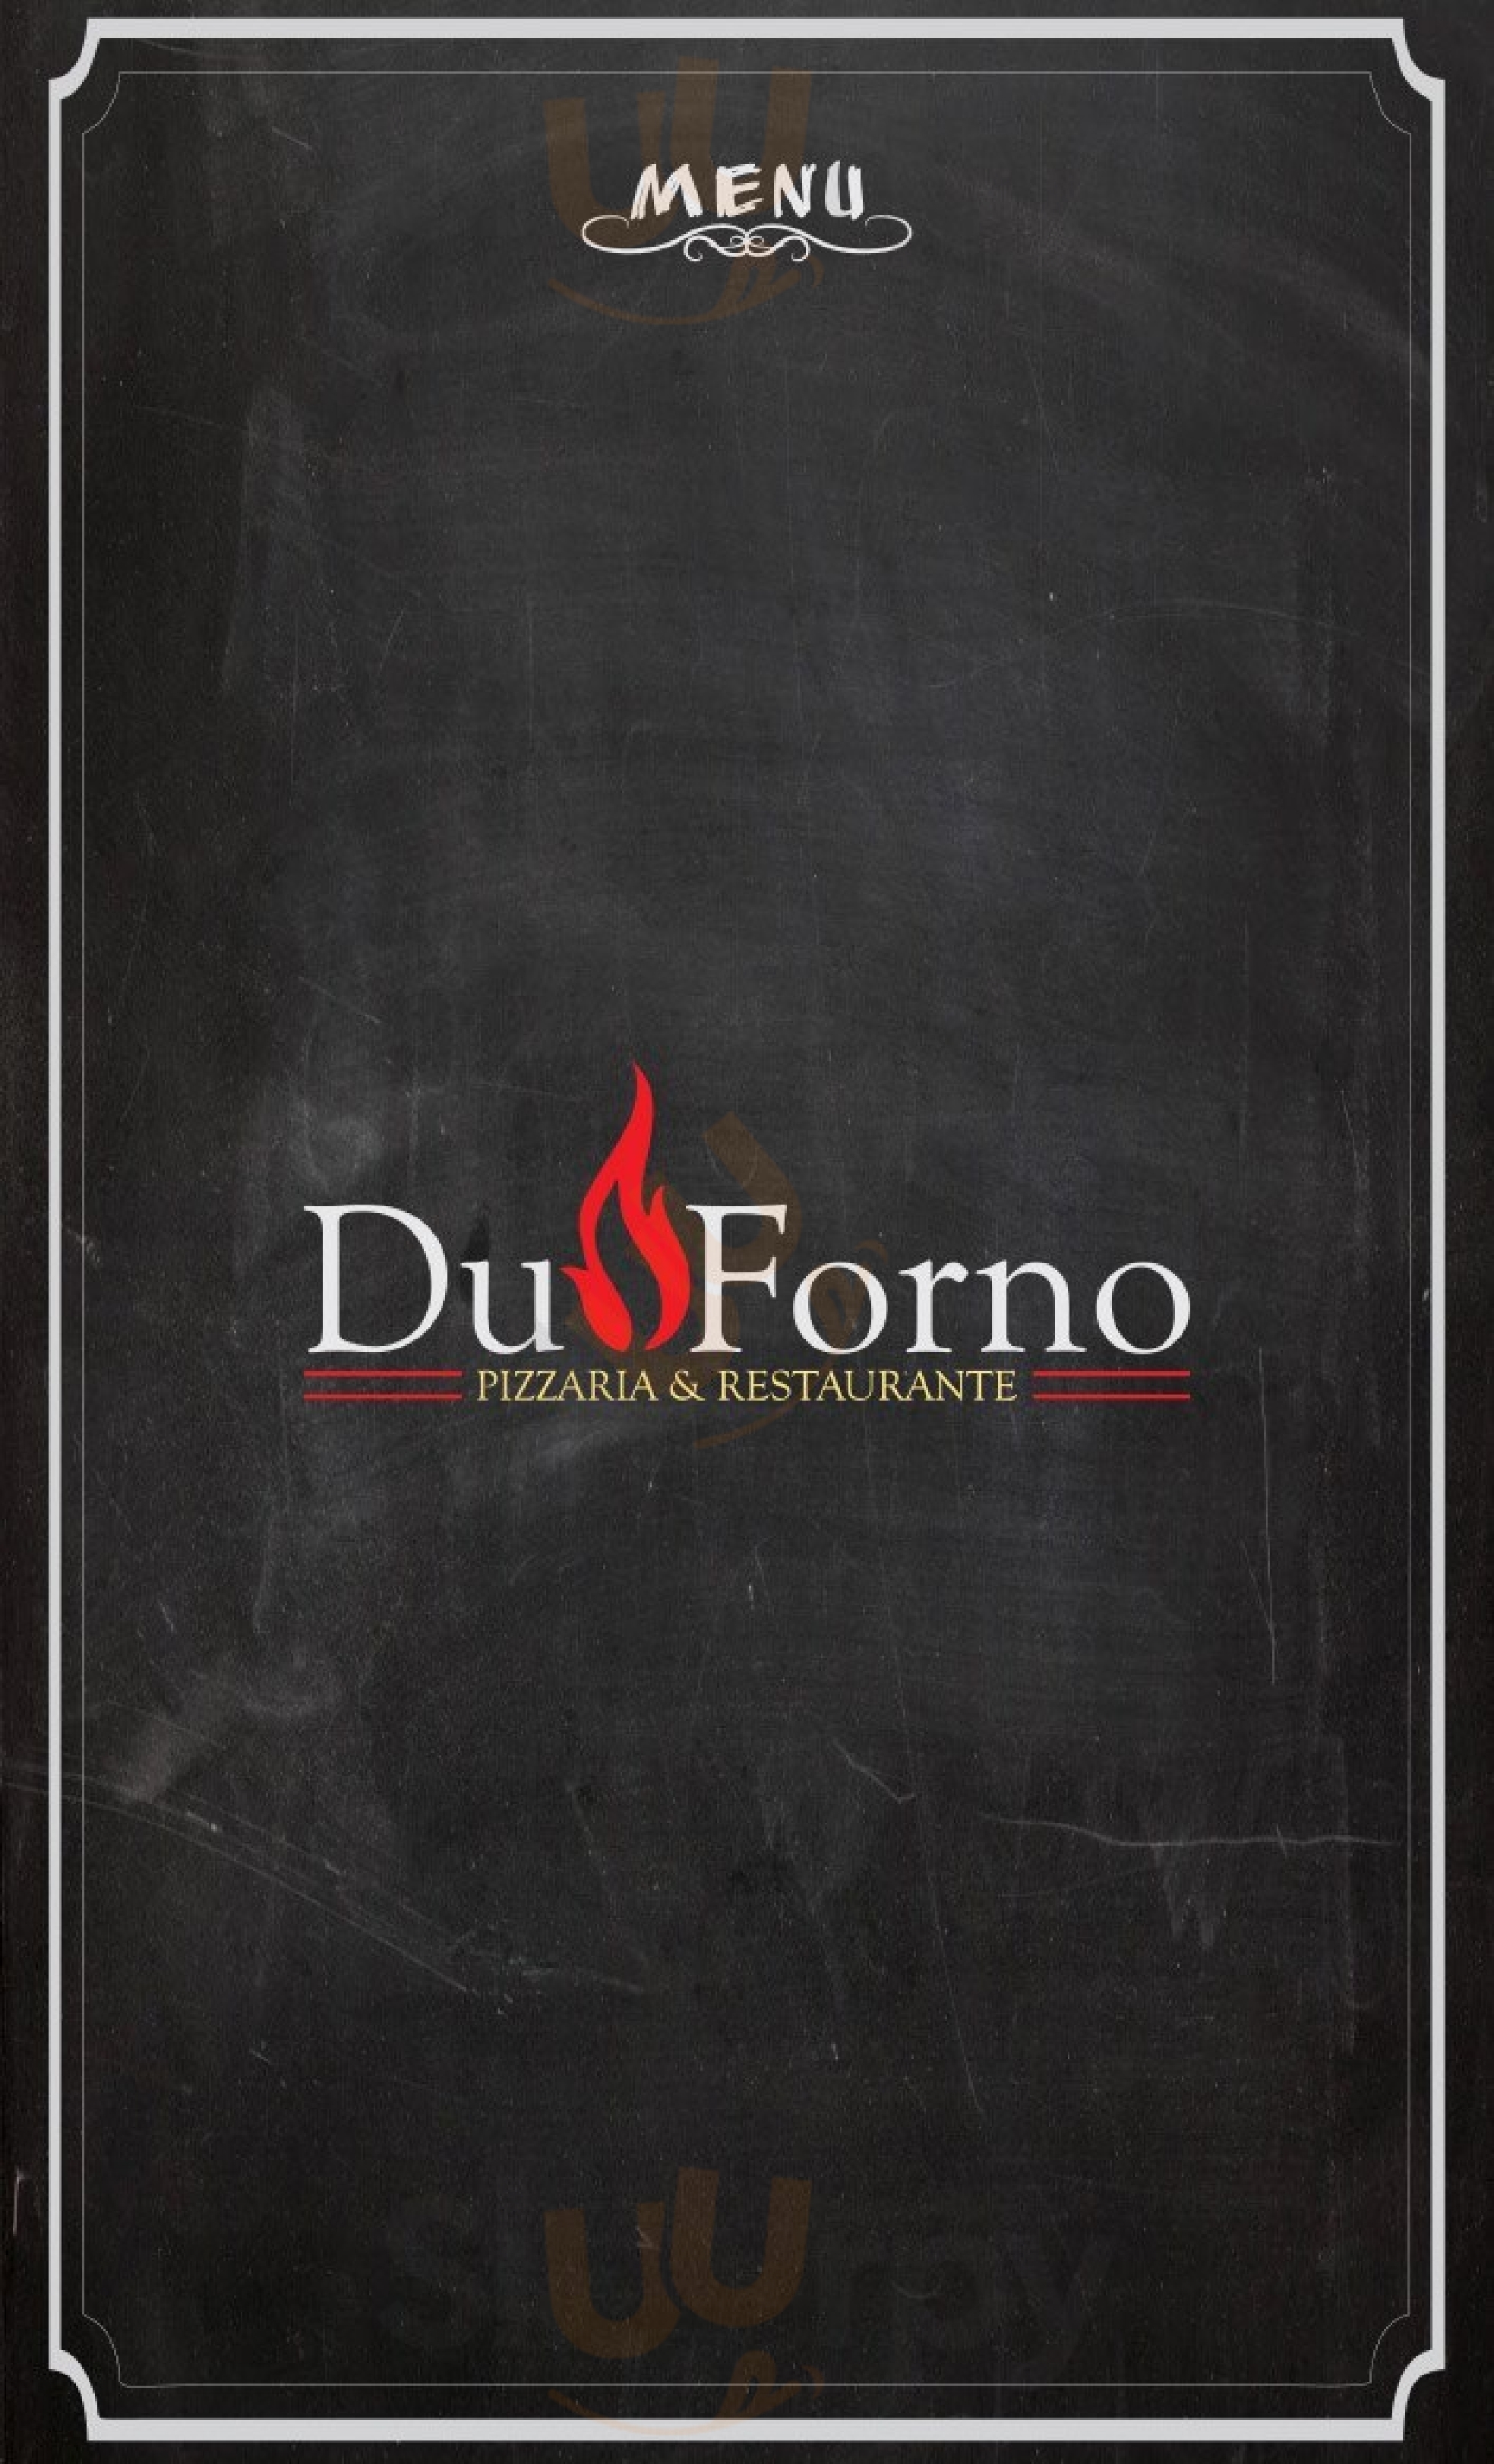 Duforno Pizzaria E Restaurante Belo Horizonte Menu - 1